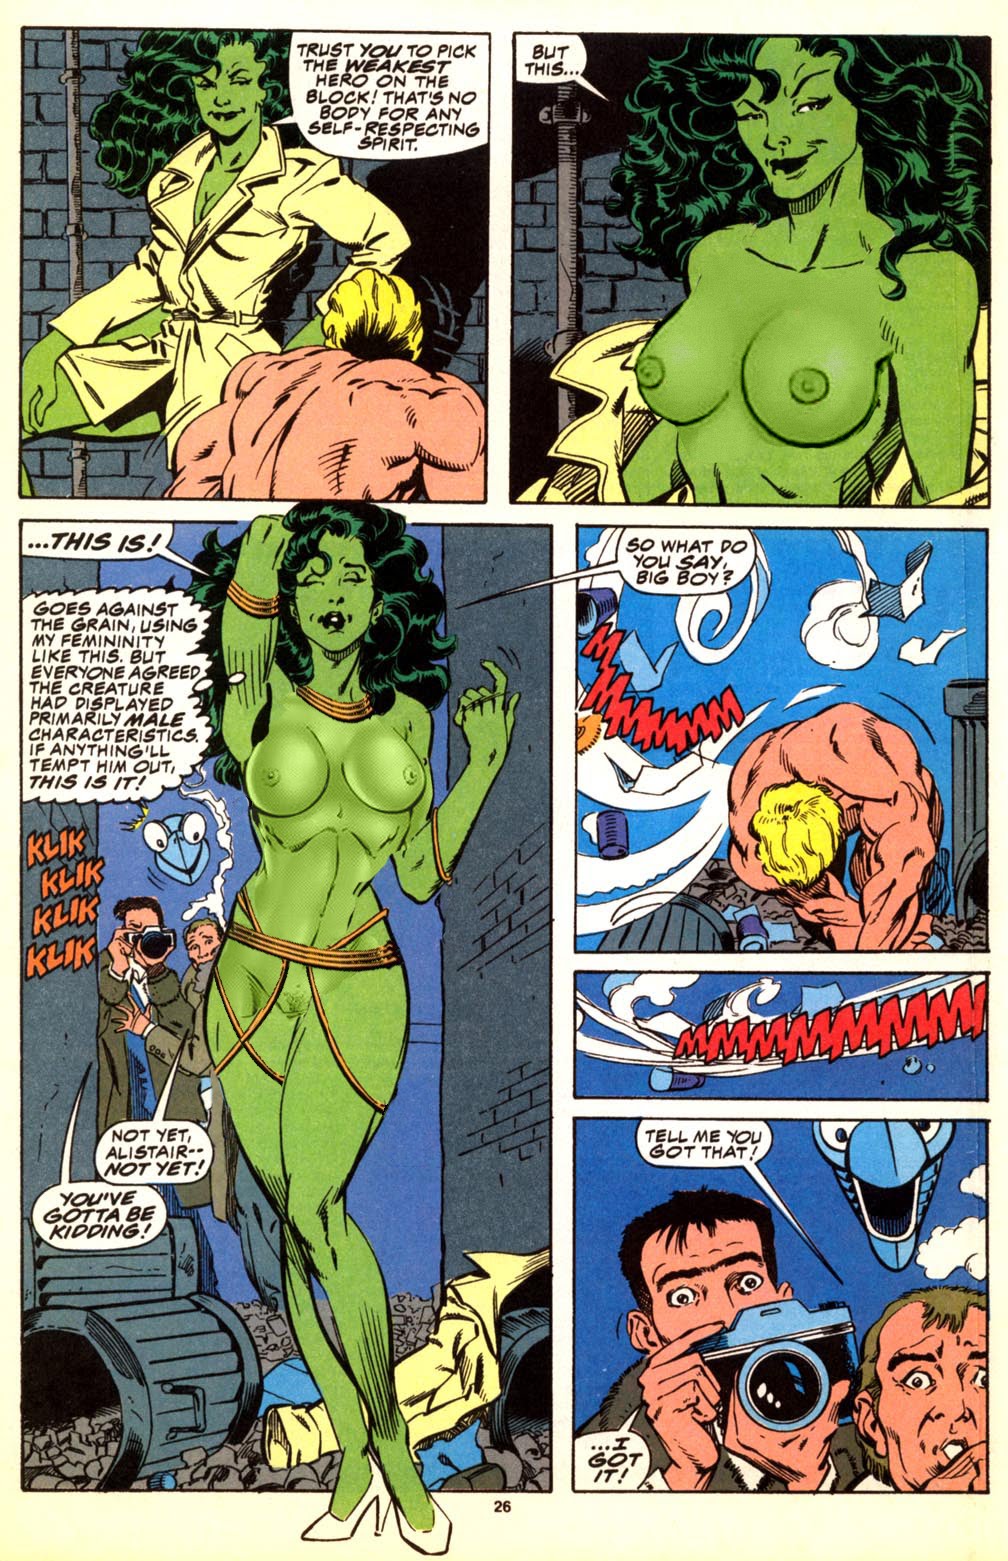 marvel she-hulk tagme